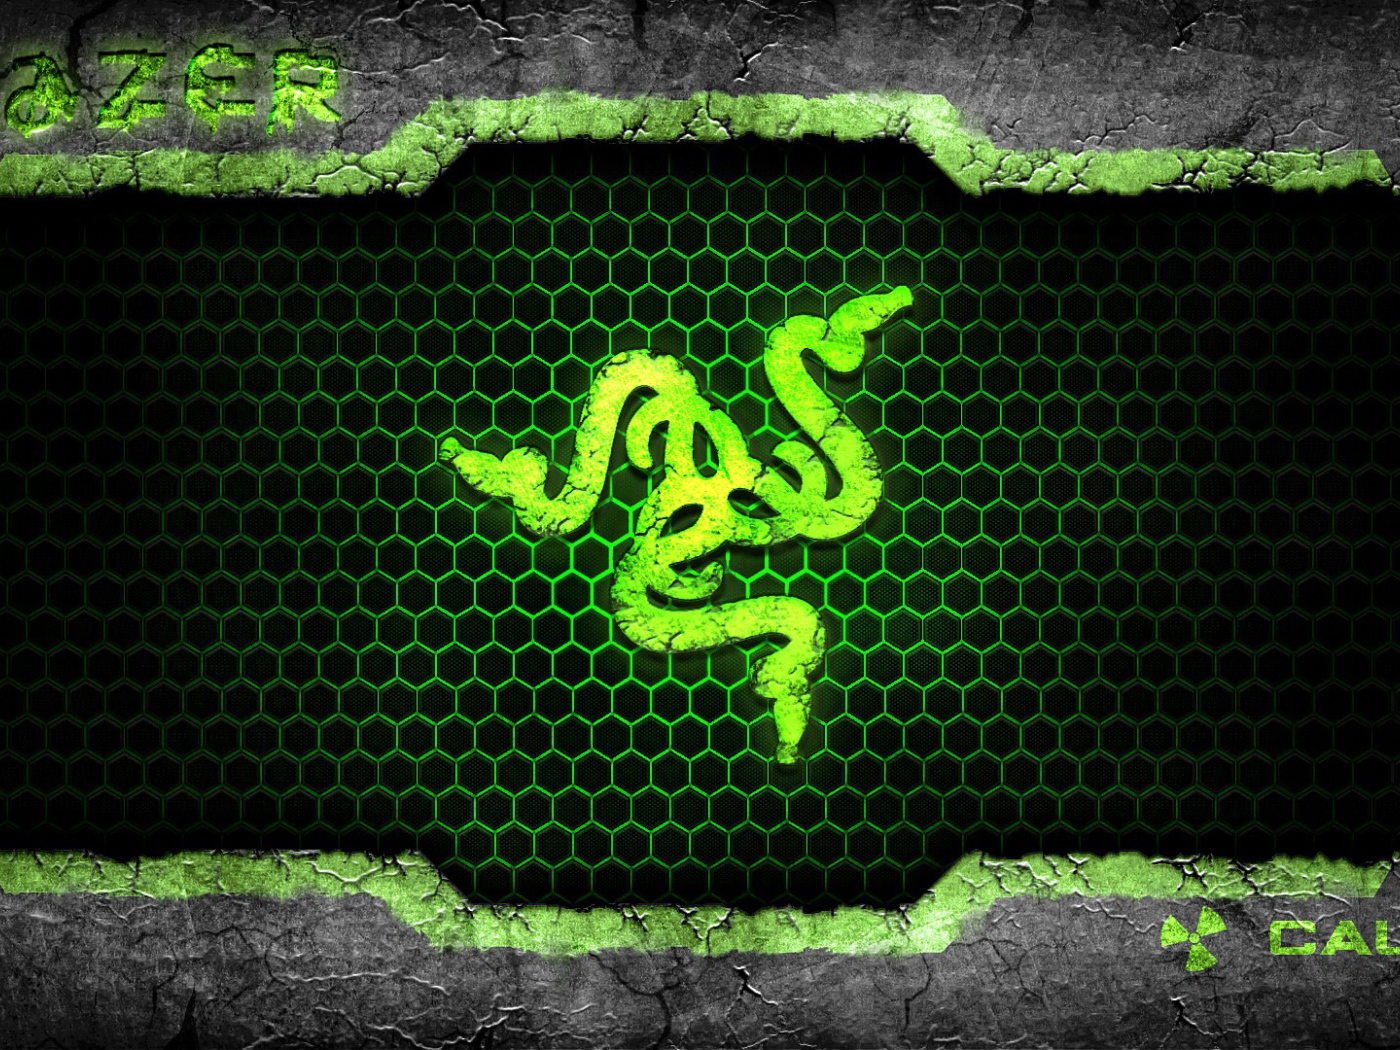 Значок из змей компании Razer